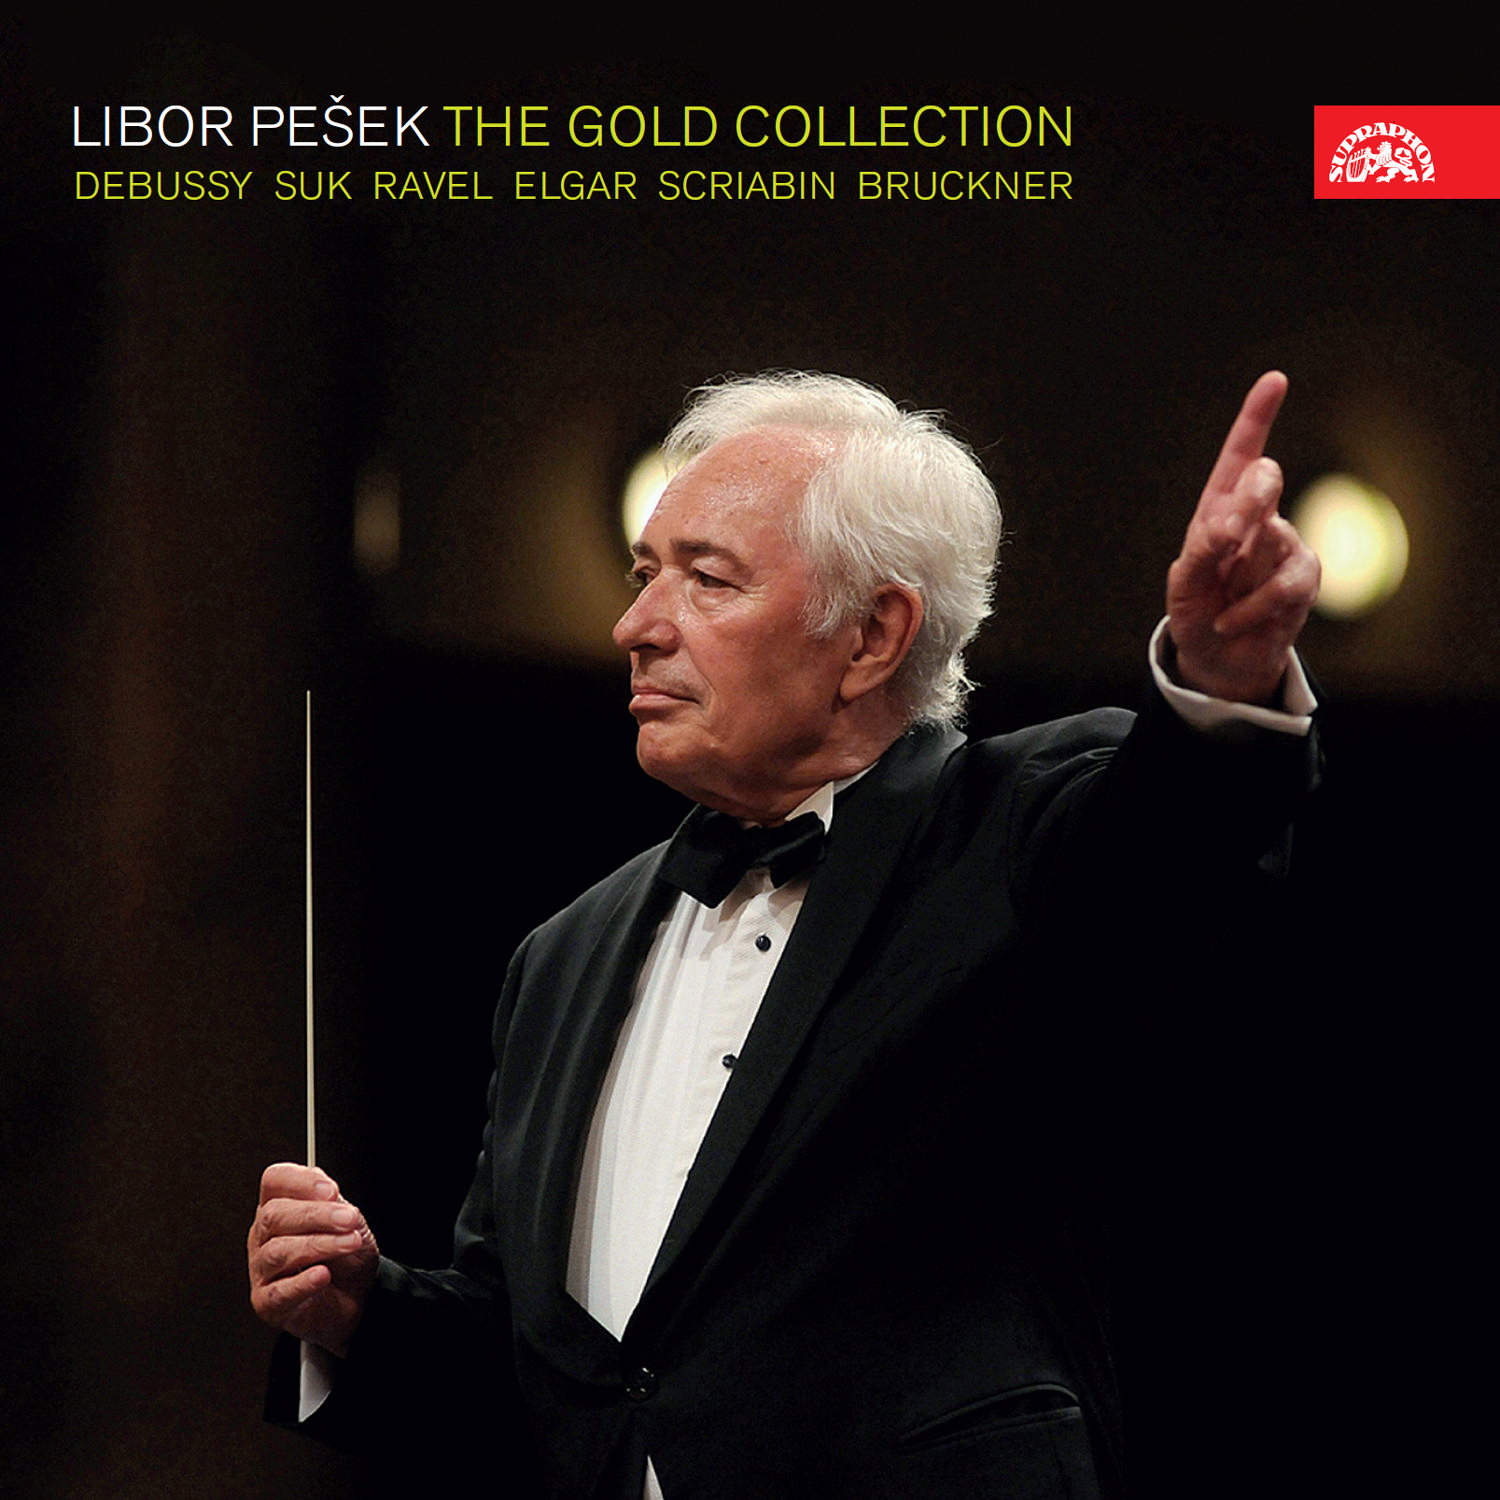 CD Shop - PESEK LIBOR LIBOR PESEK THE GOLD COLLECTION Ravel,Debussy,Suk,Bruckner,Elgar,Skrjabin